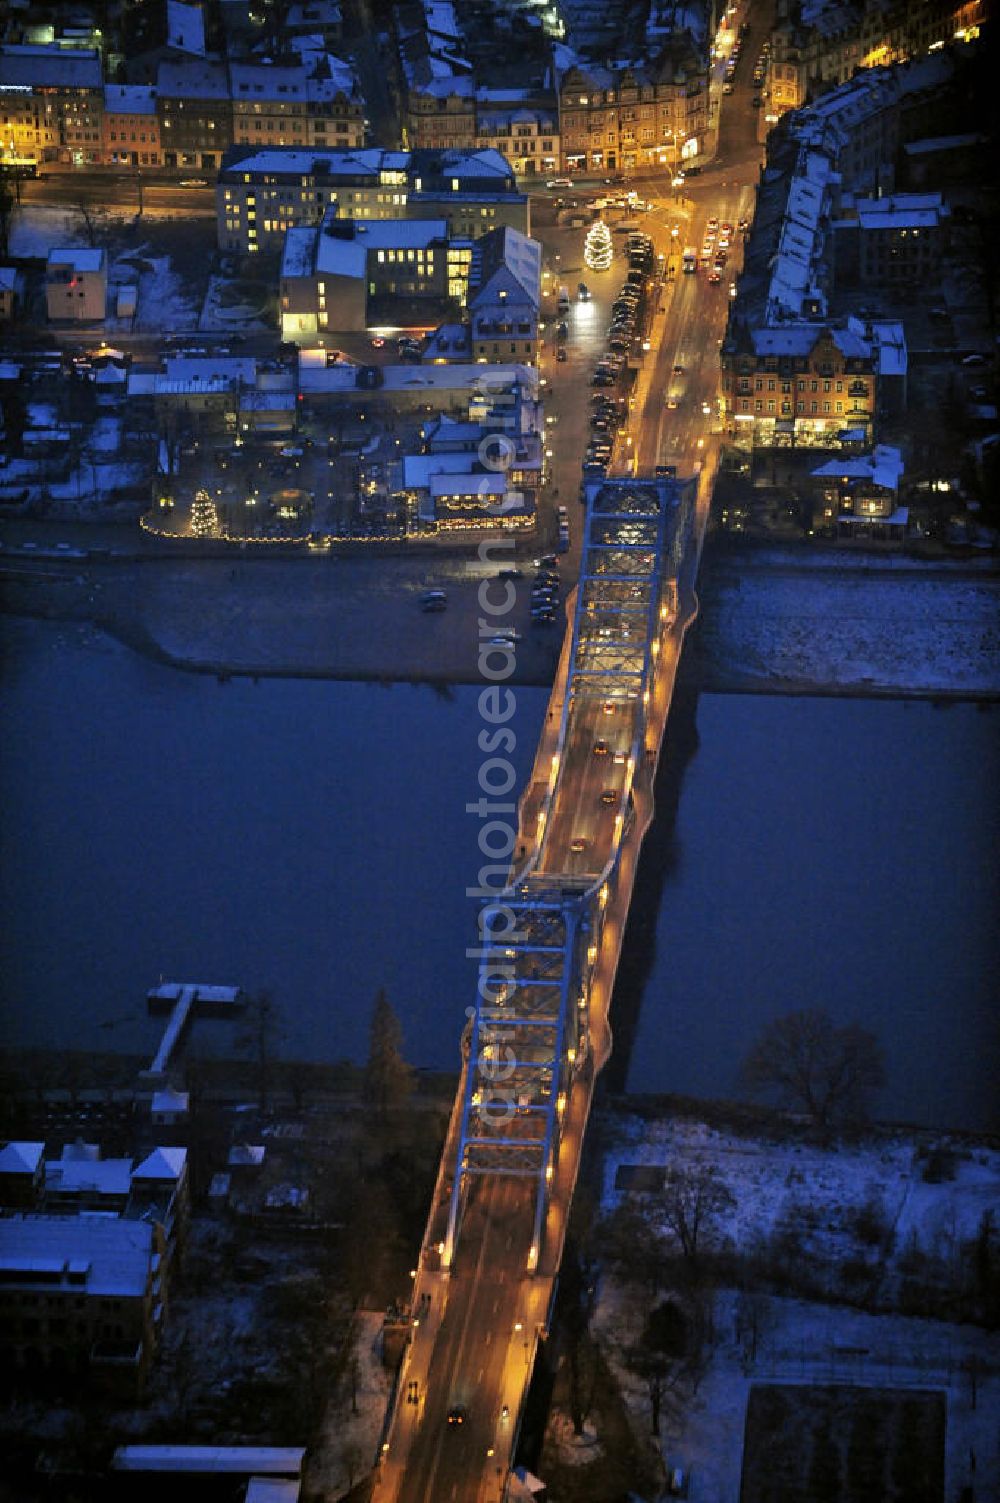 Aerial image at night Dresden - Nachtaufnahme der Brücke Blaues Wunder (eigentlich Löschwitzer Brücke) über die winterliche Elbe. Die Stahlwerkkonstruktion wurde von 1891 - 1893 erbaut und hat eine Länge von 260 m. Night shot of the bridge Blue Wonder across the Elbe River.